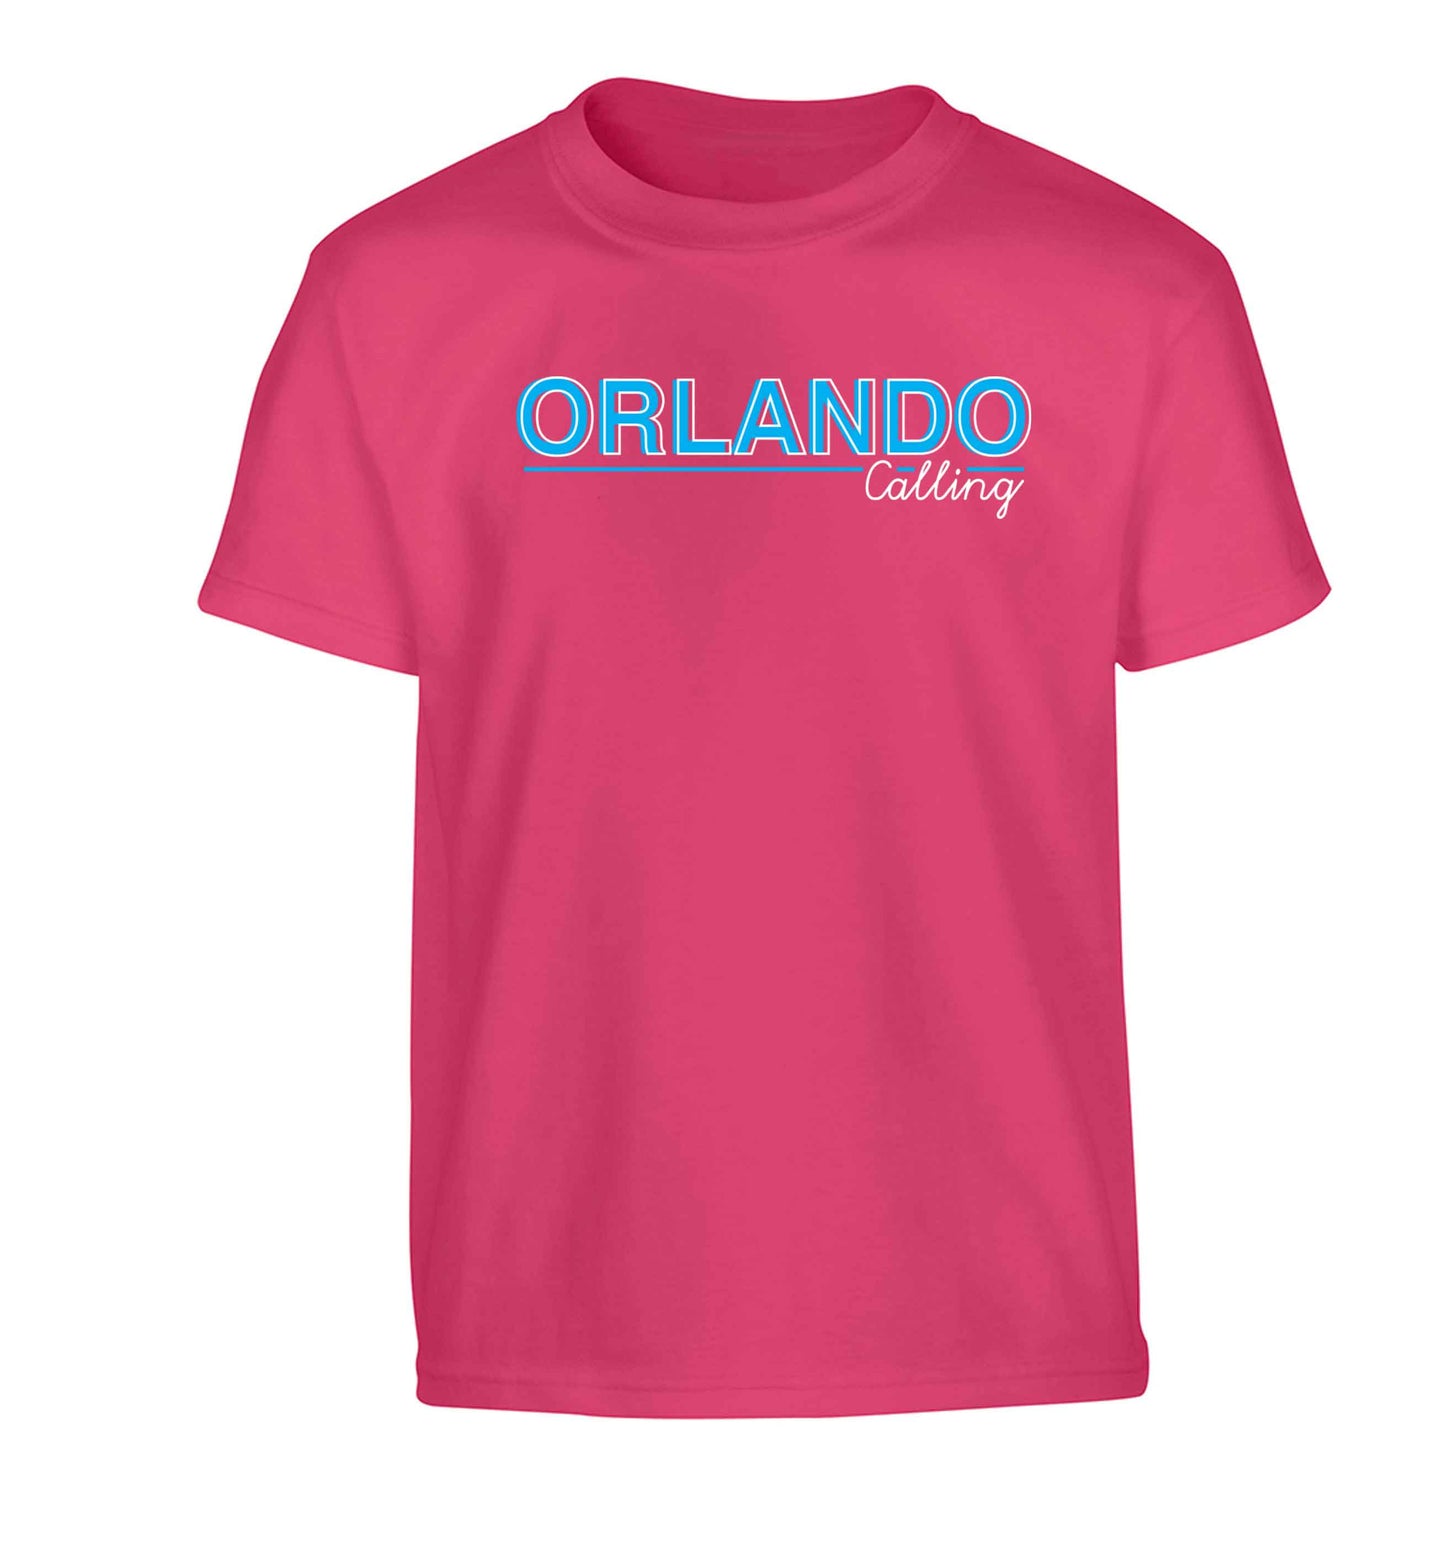 Orlando calling Children's pink Tshirt 12-13 Years